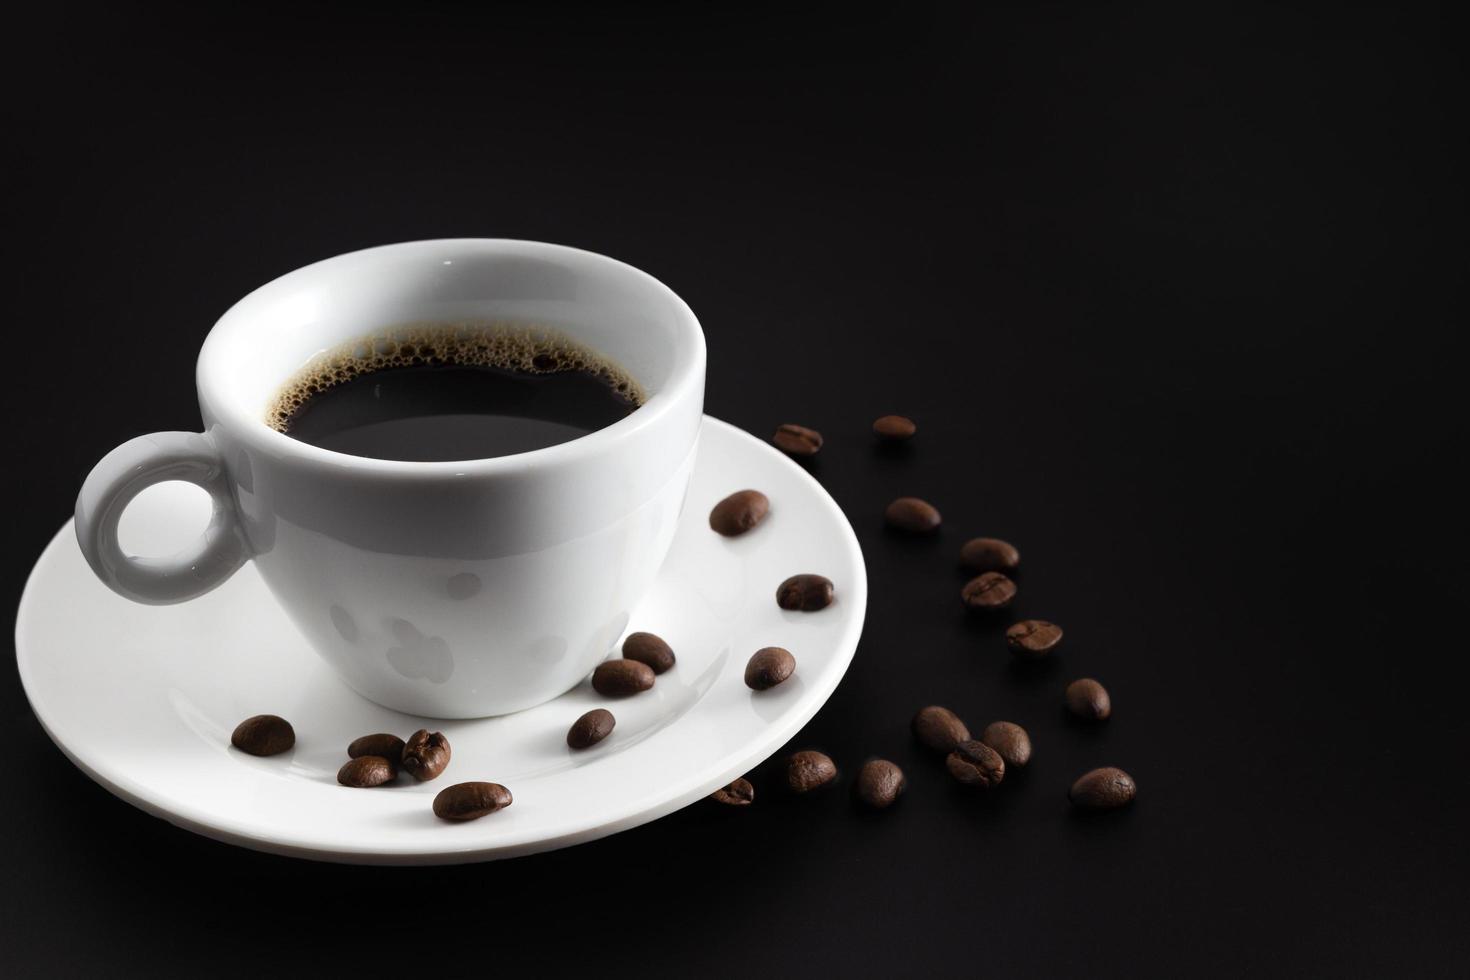 zwarte koffie in witte koffiekop en schotel met bonen koffie op zwarte achtergrond. foto